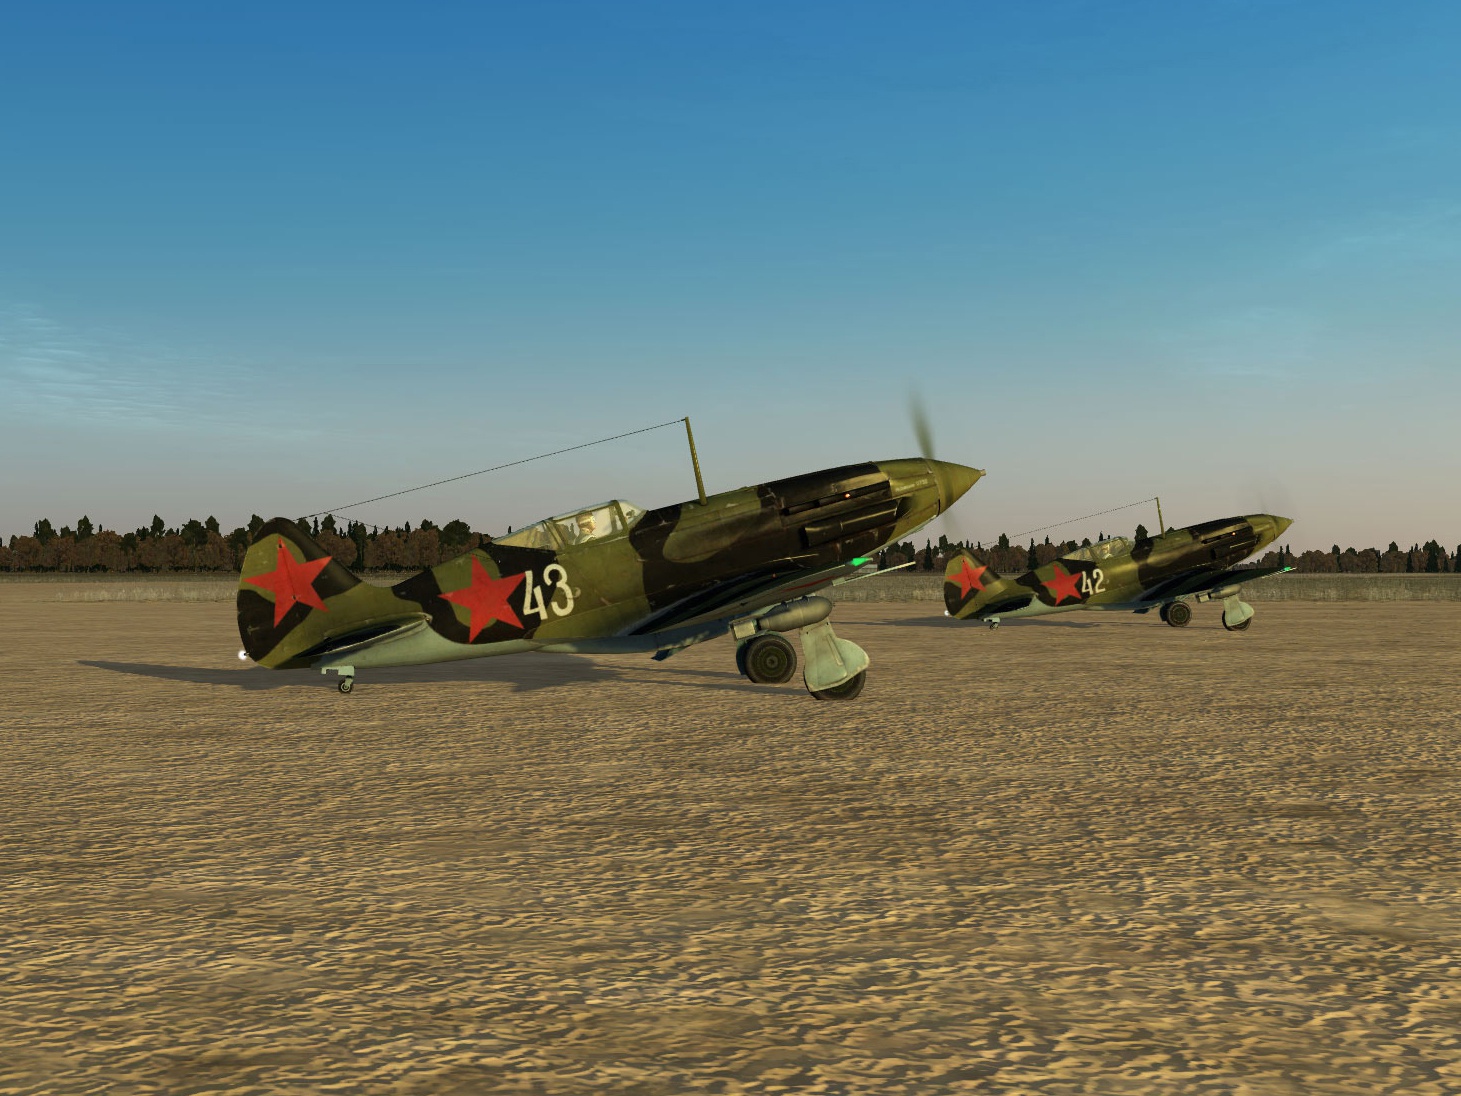 Скриншоты из российской компьютерной игры «Ил-2 Штурмовик». Данные варианты текстур, воссоздающие исторические окраски самолётов, выполнены Максимом Брянским